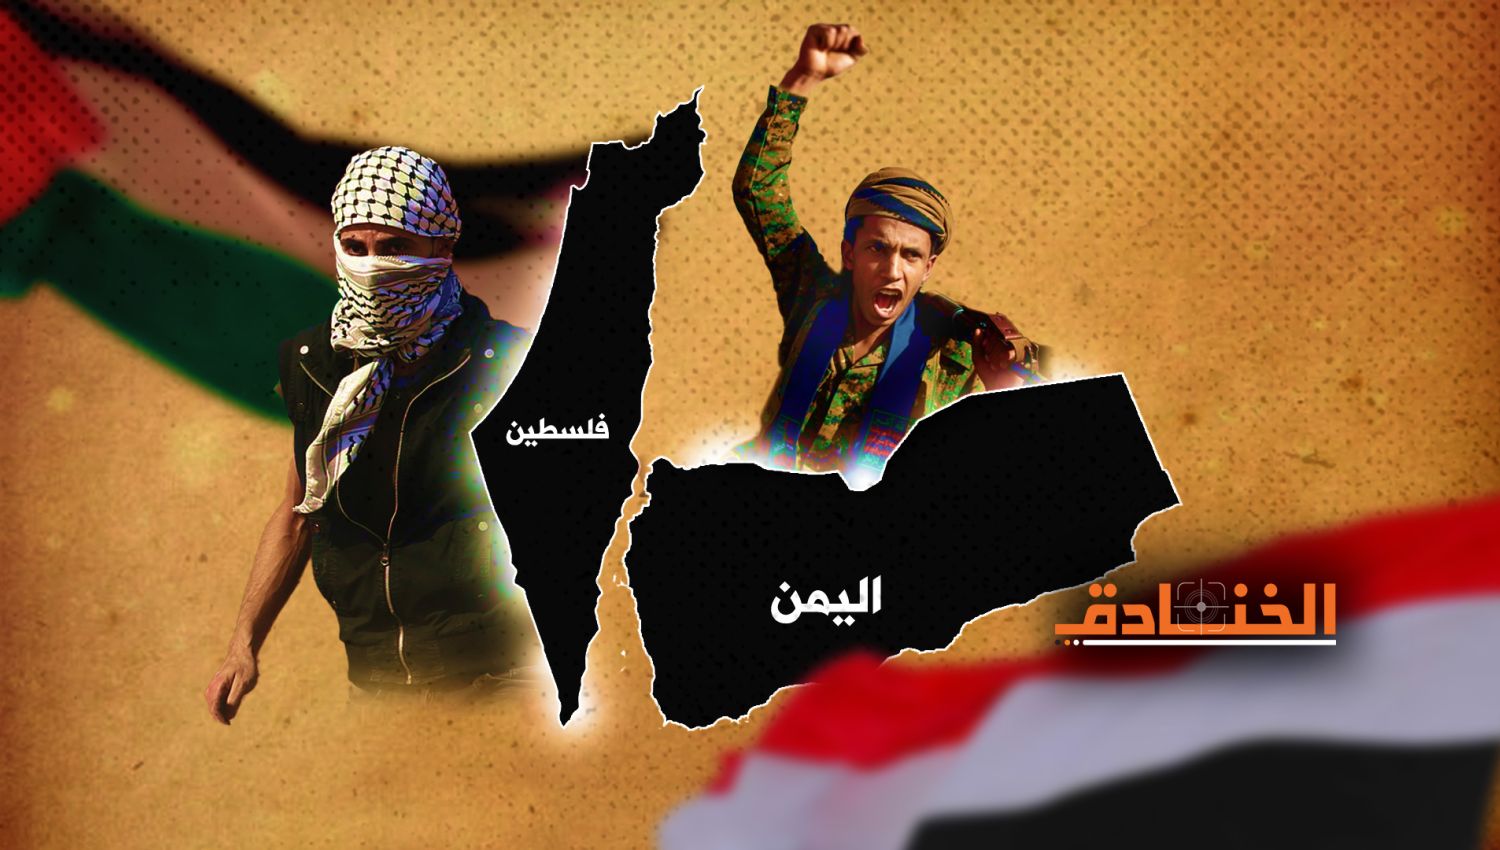 اليمن وفلسطين: توأم المعاناة والصمود والمقاومة